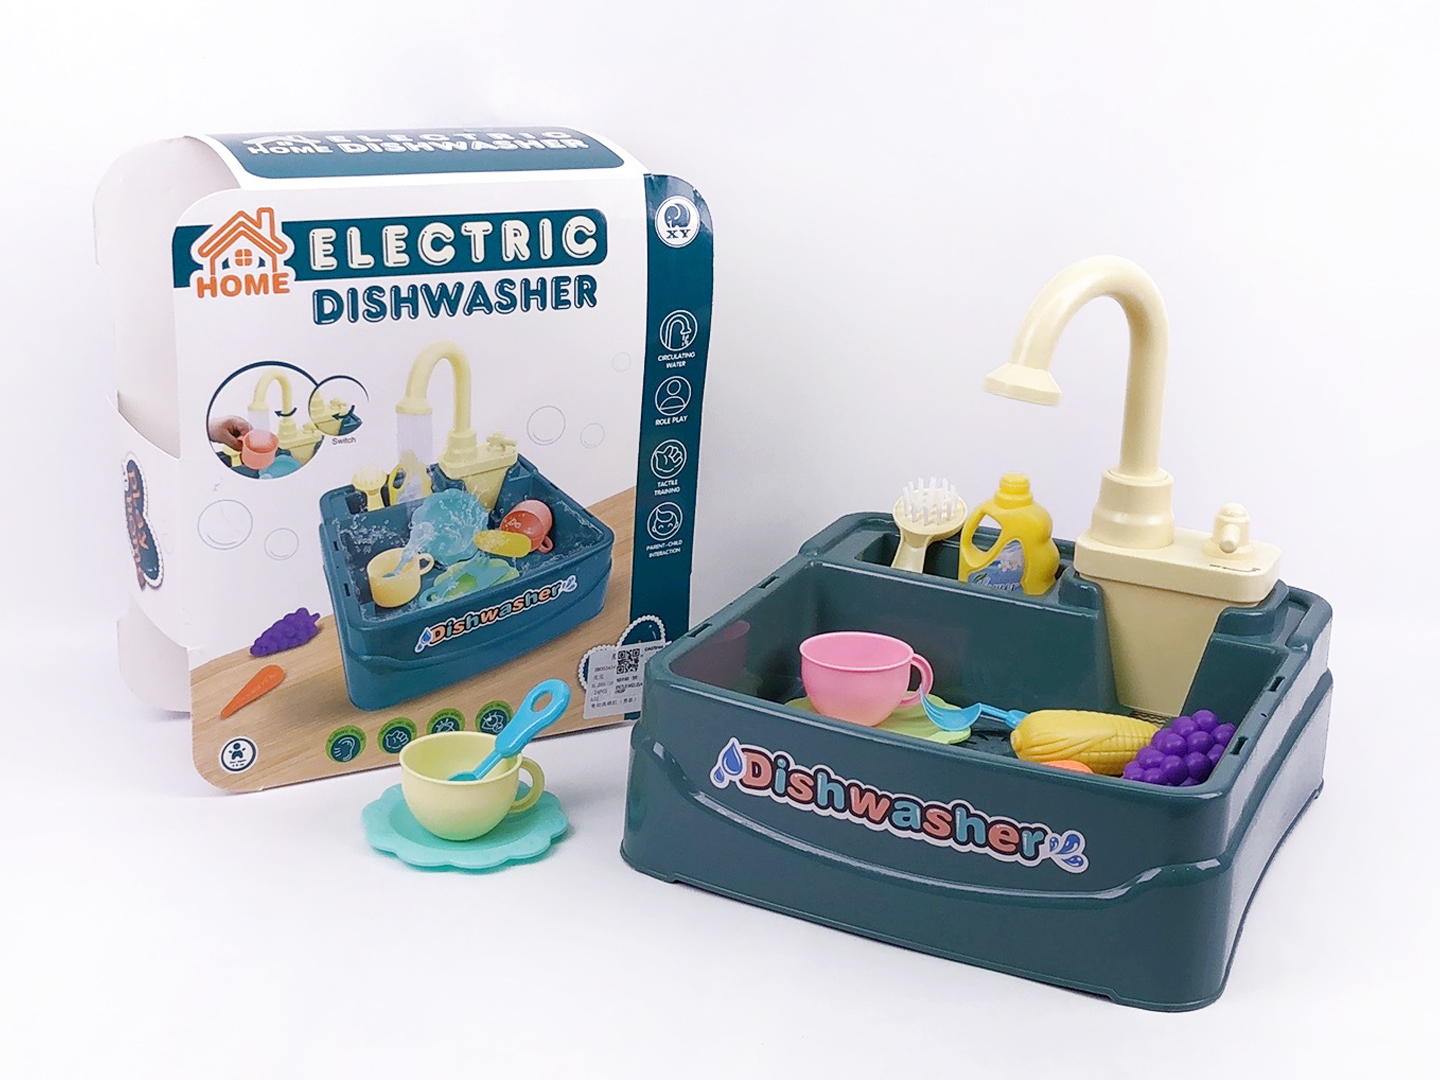 Electric Dishwasher toys